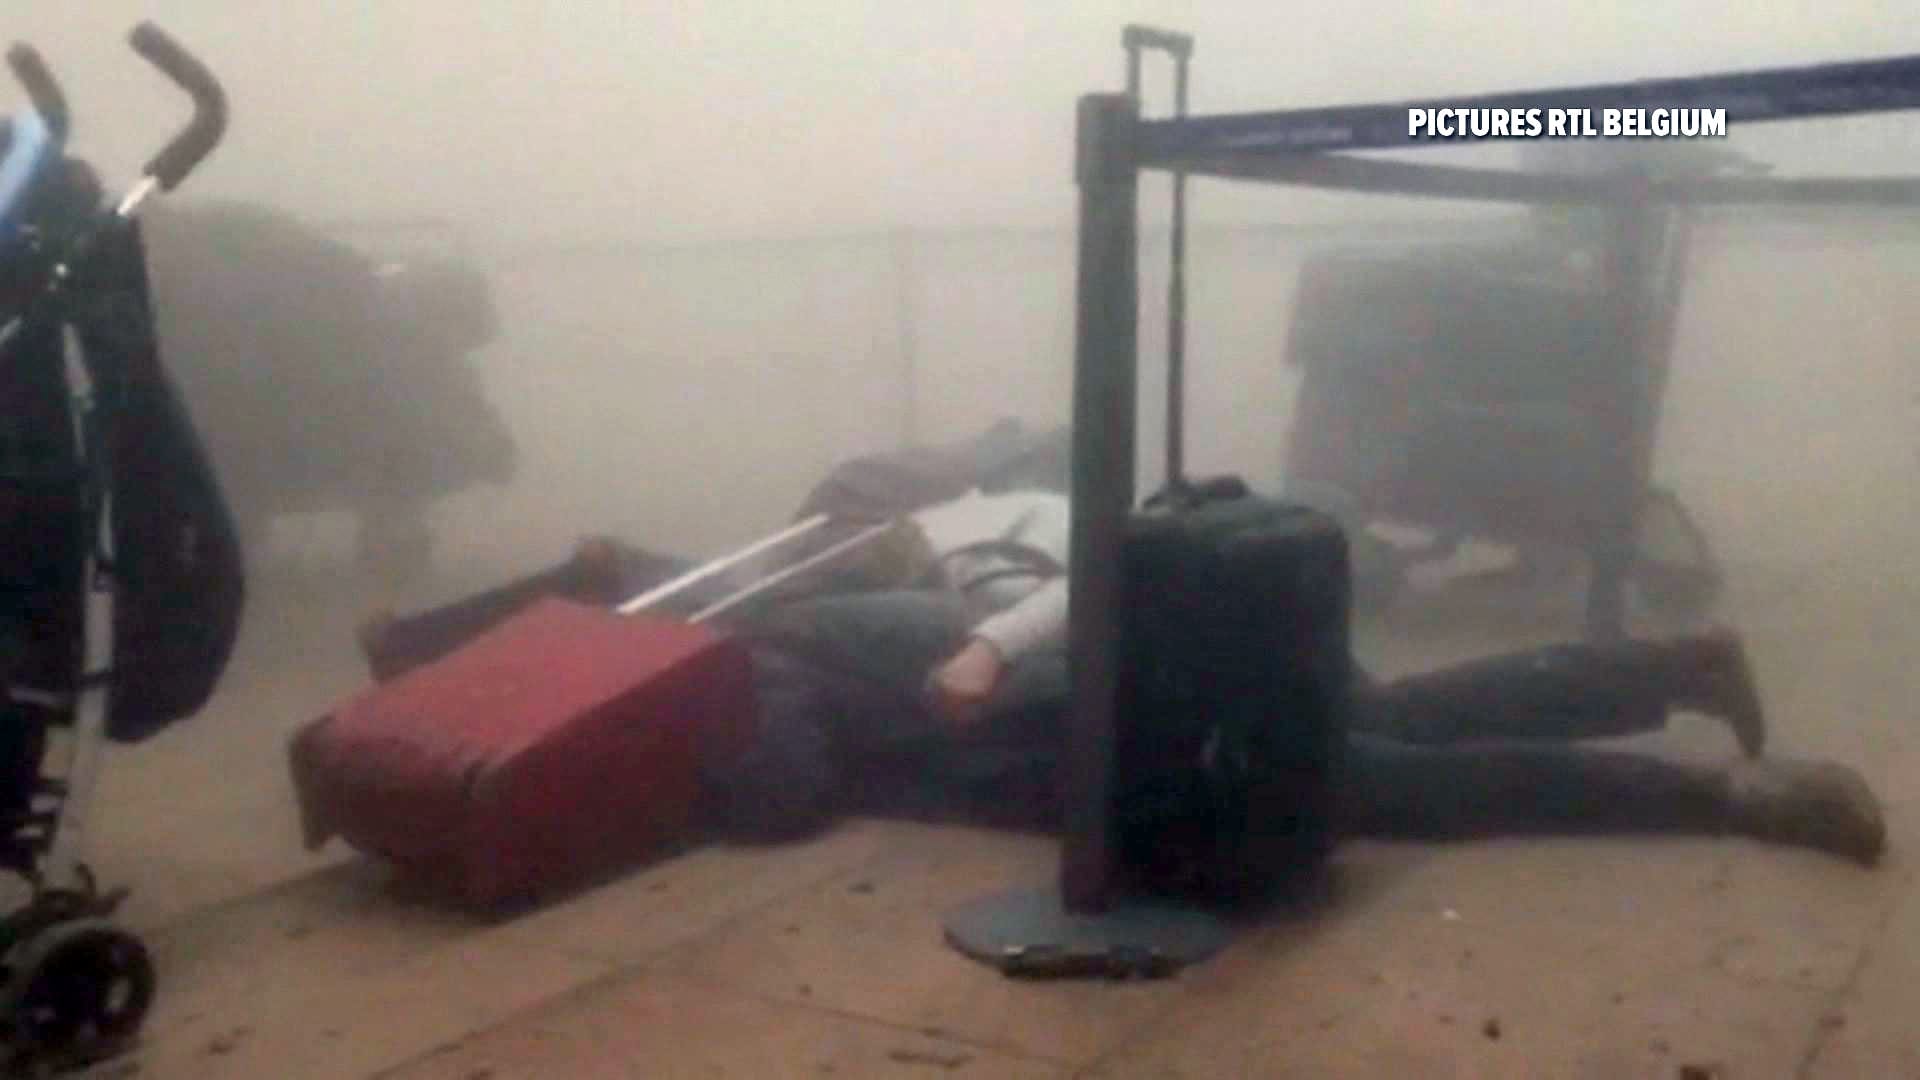 Eine Standbildaufnahme von RTL Belgien zeigt zwei Reisende, die nach der Detonation am Flughafen auf dem Boden liegen.